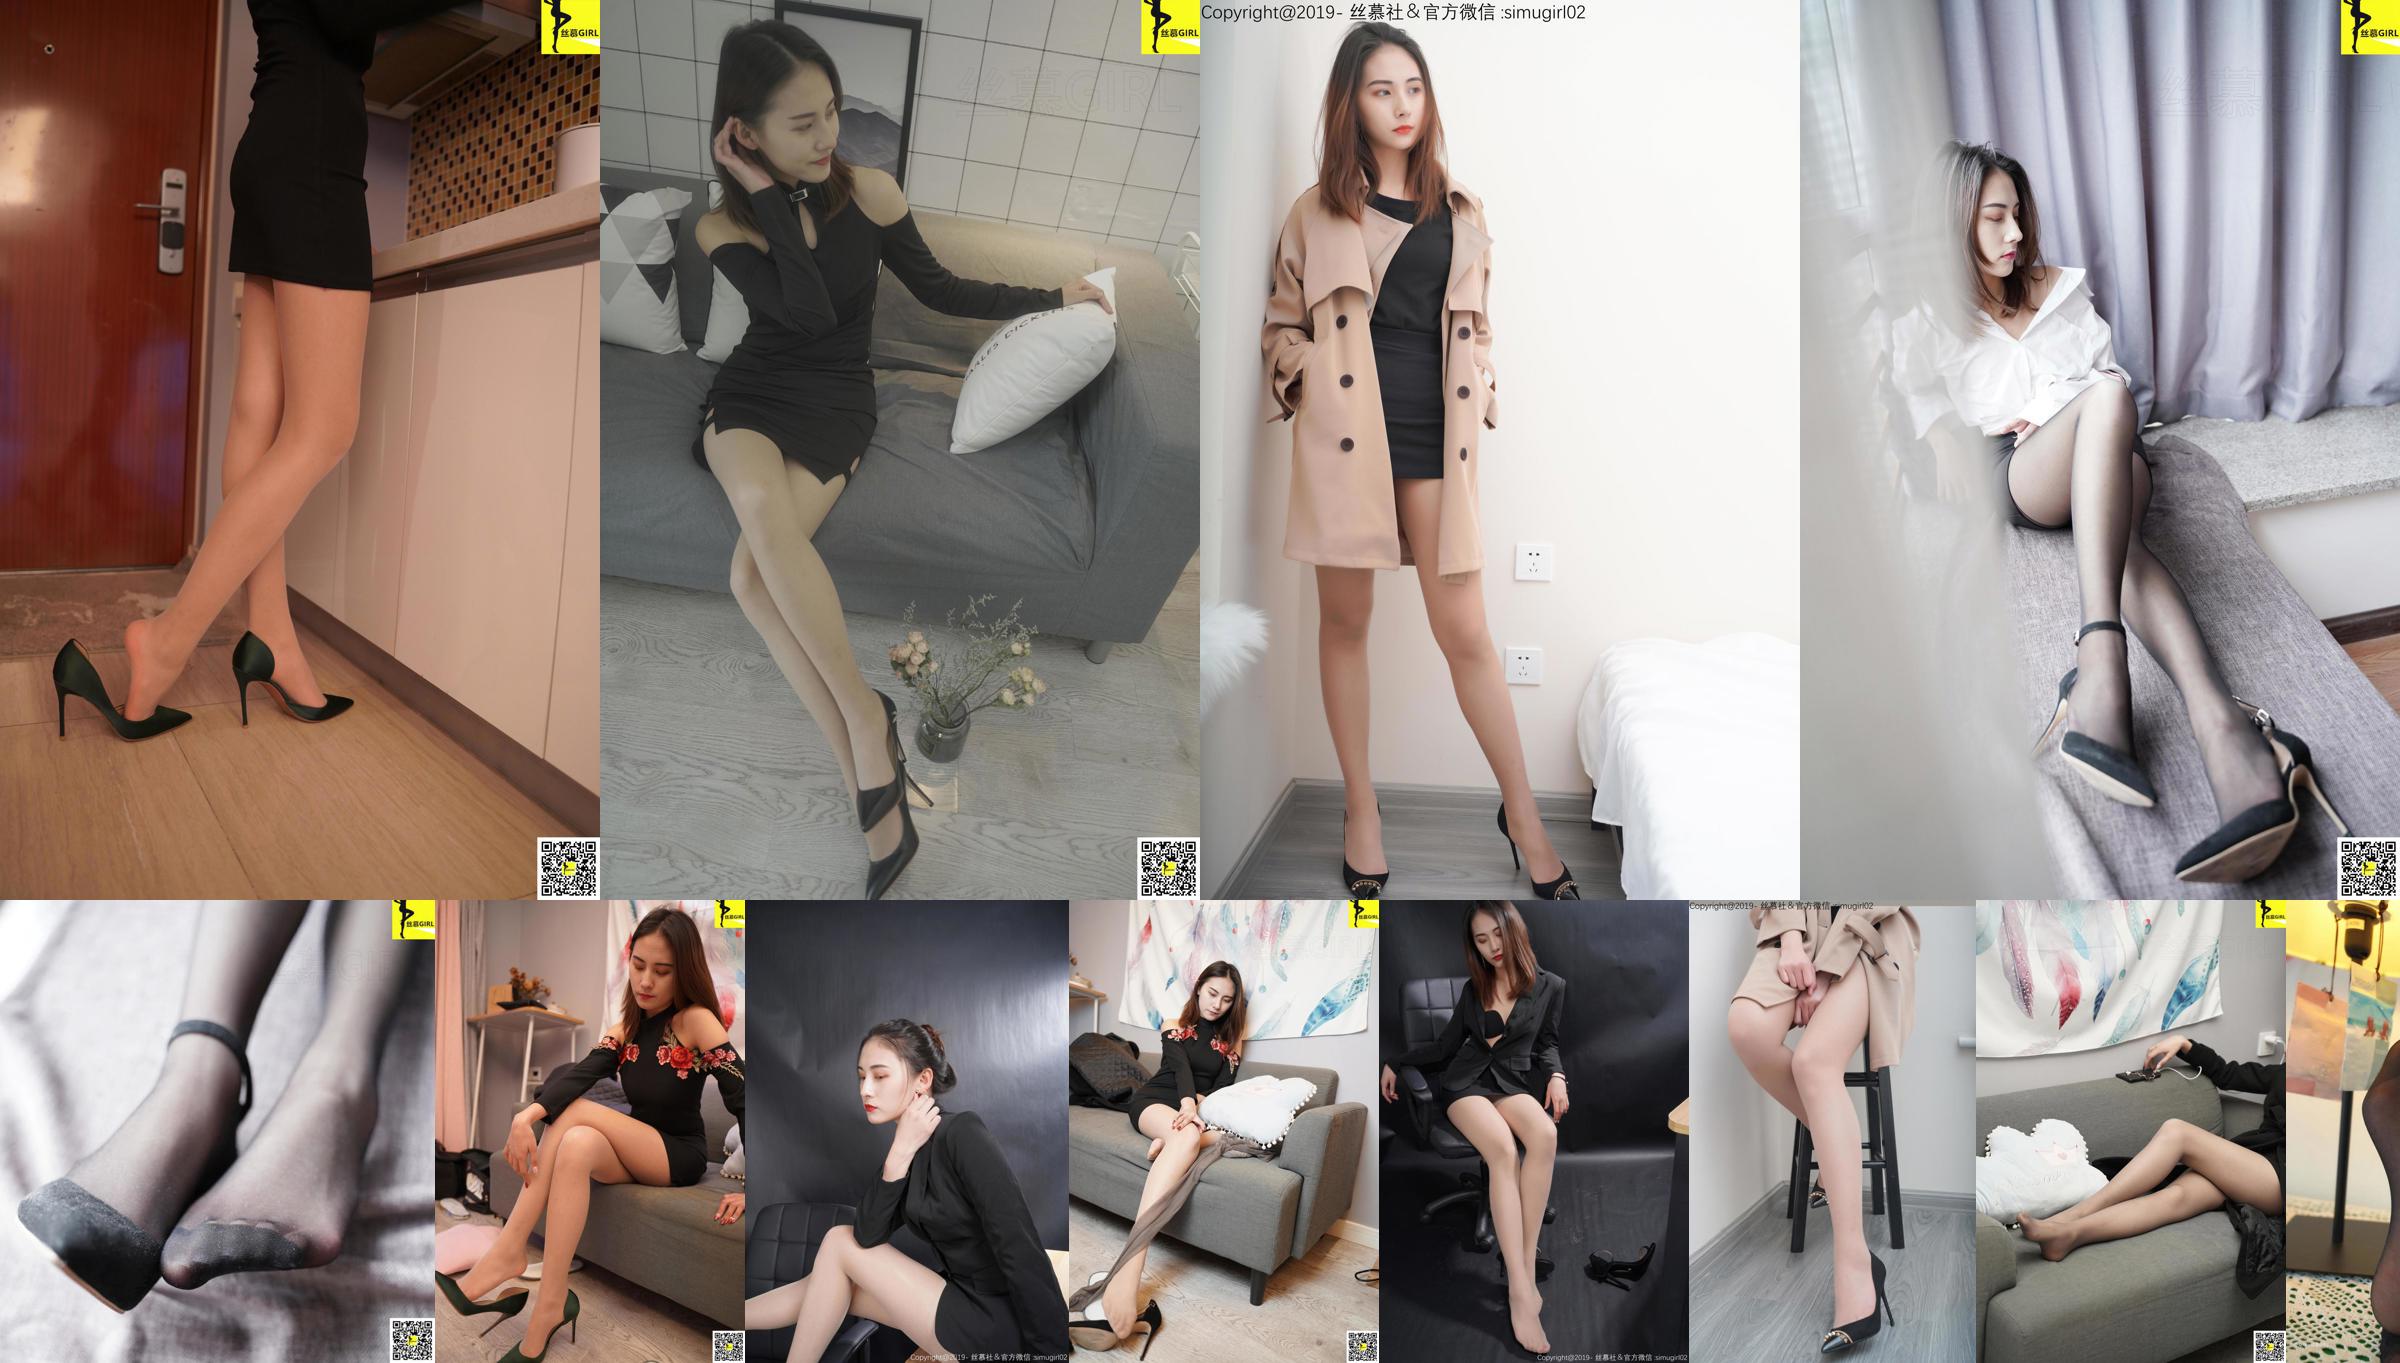 [Simu] SM006 Tingyi "Vrouwelijke baas met mooie voeten" No.93e803 Pagina 8